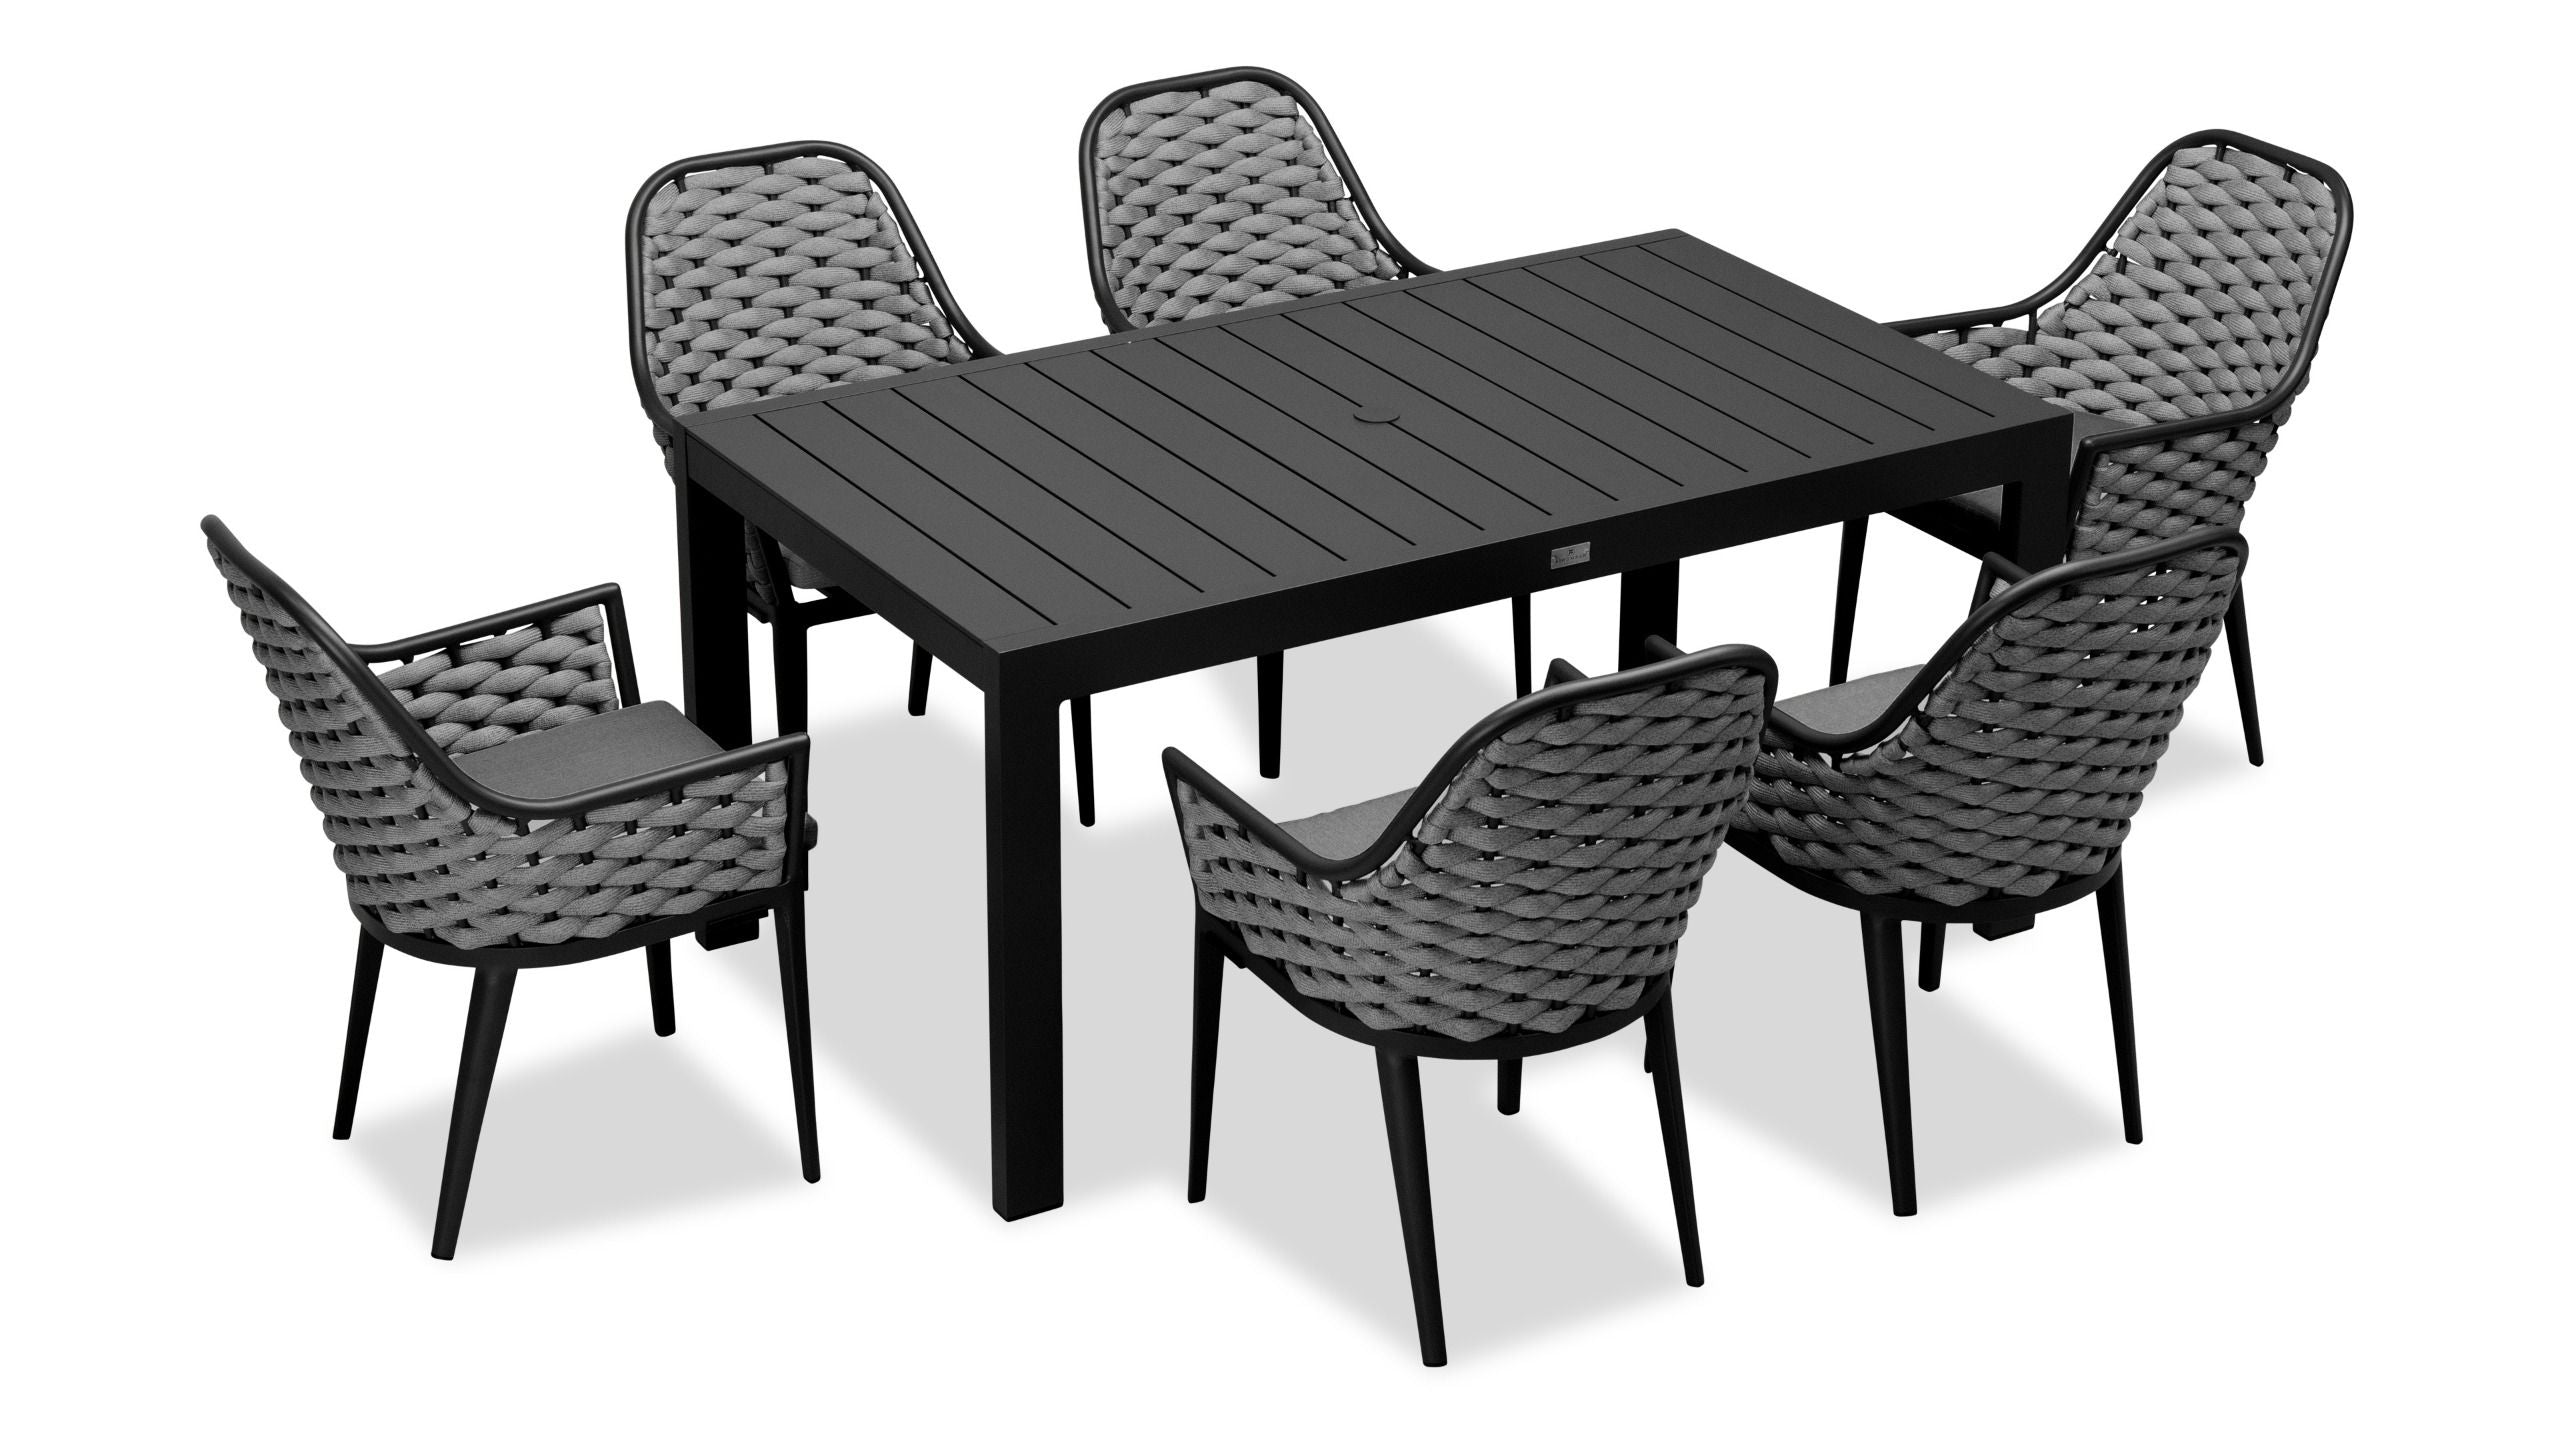 Harmonia Living - Parlor Classic 6 Seat Rectangular Dining Table - Black/Slate | PAR-BK-SET533